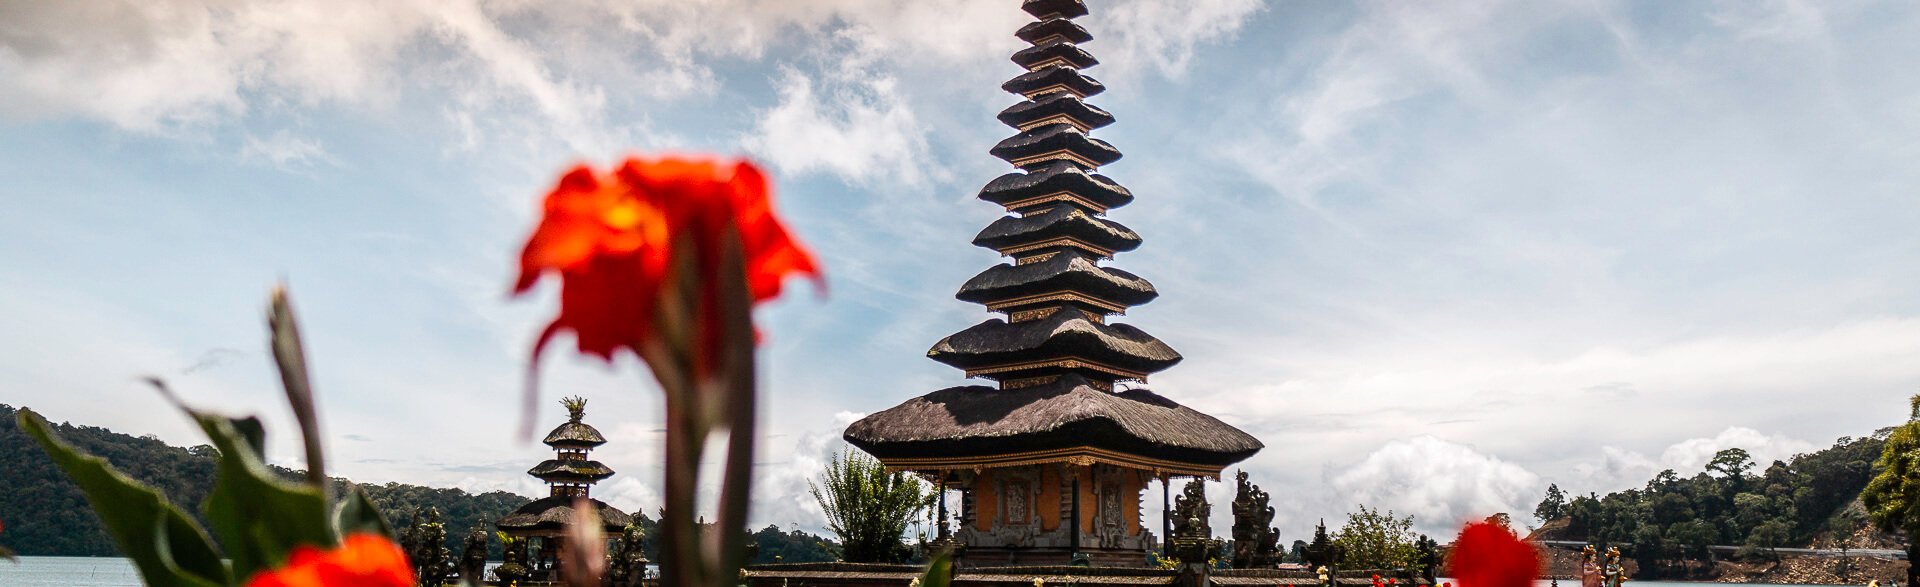 Things to do in Munduk, Bali.